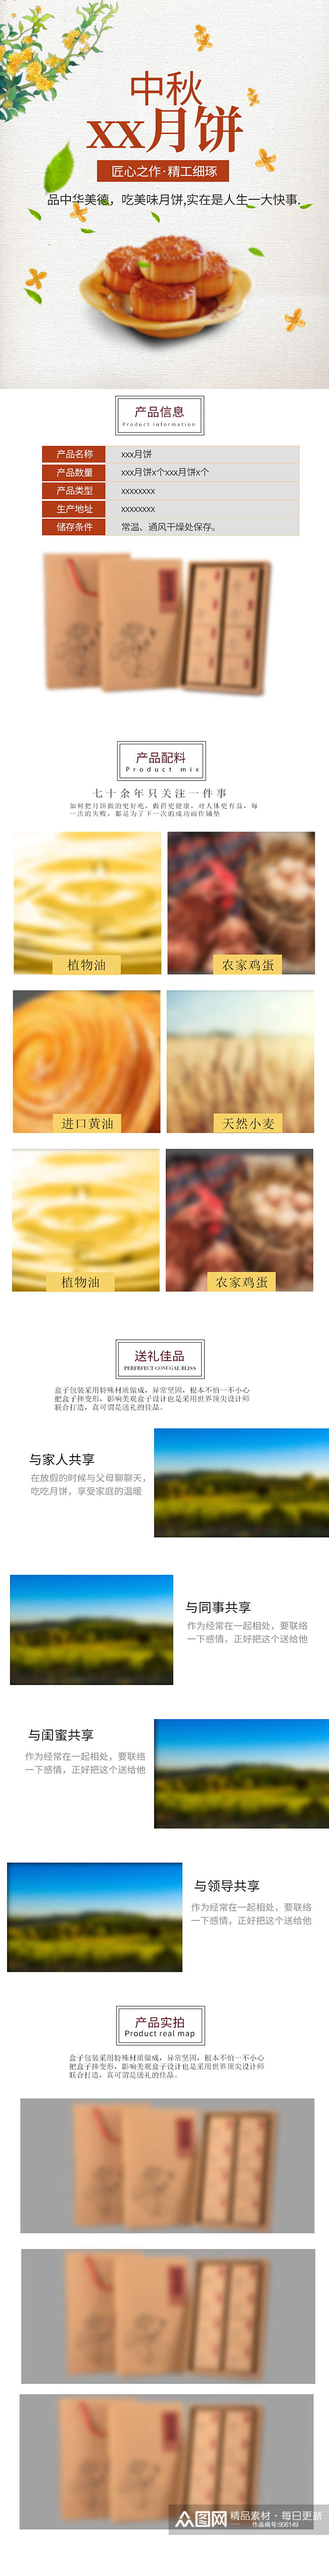 中秋节月饼详情页淘宝模板素材